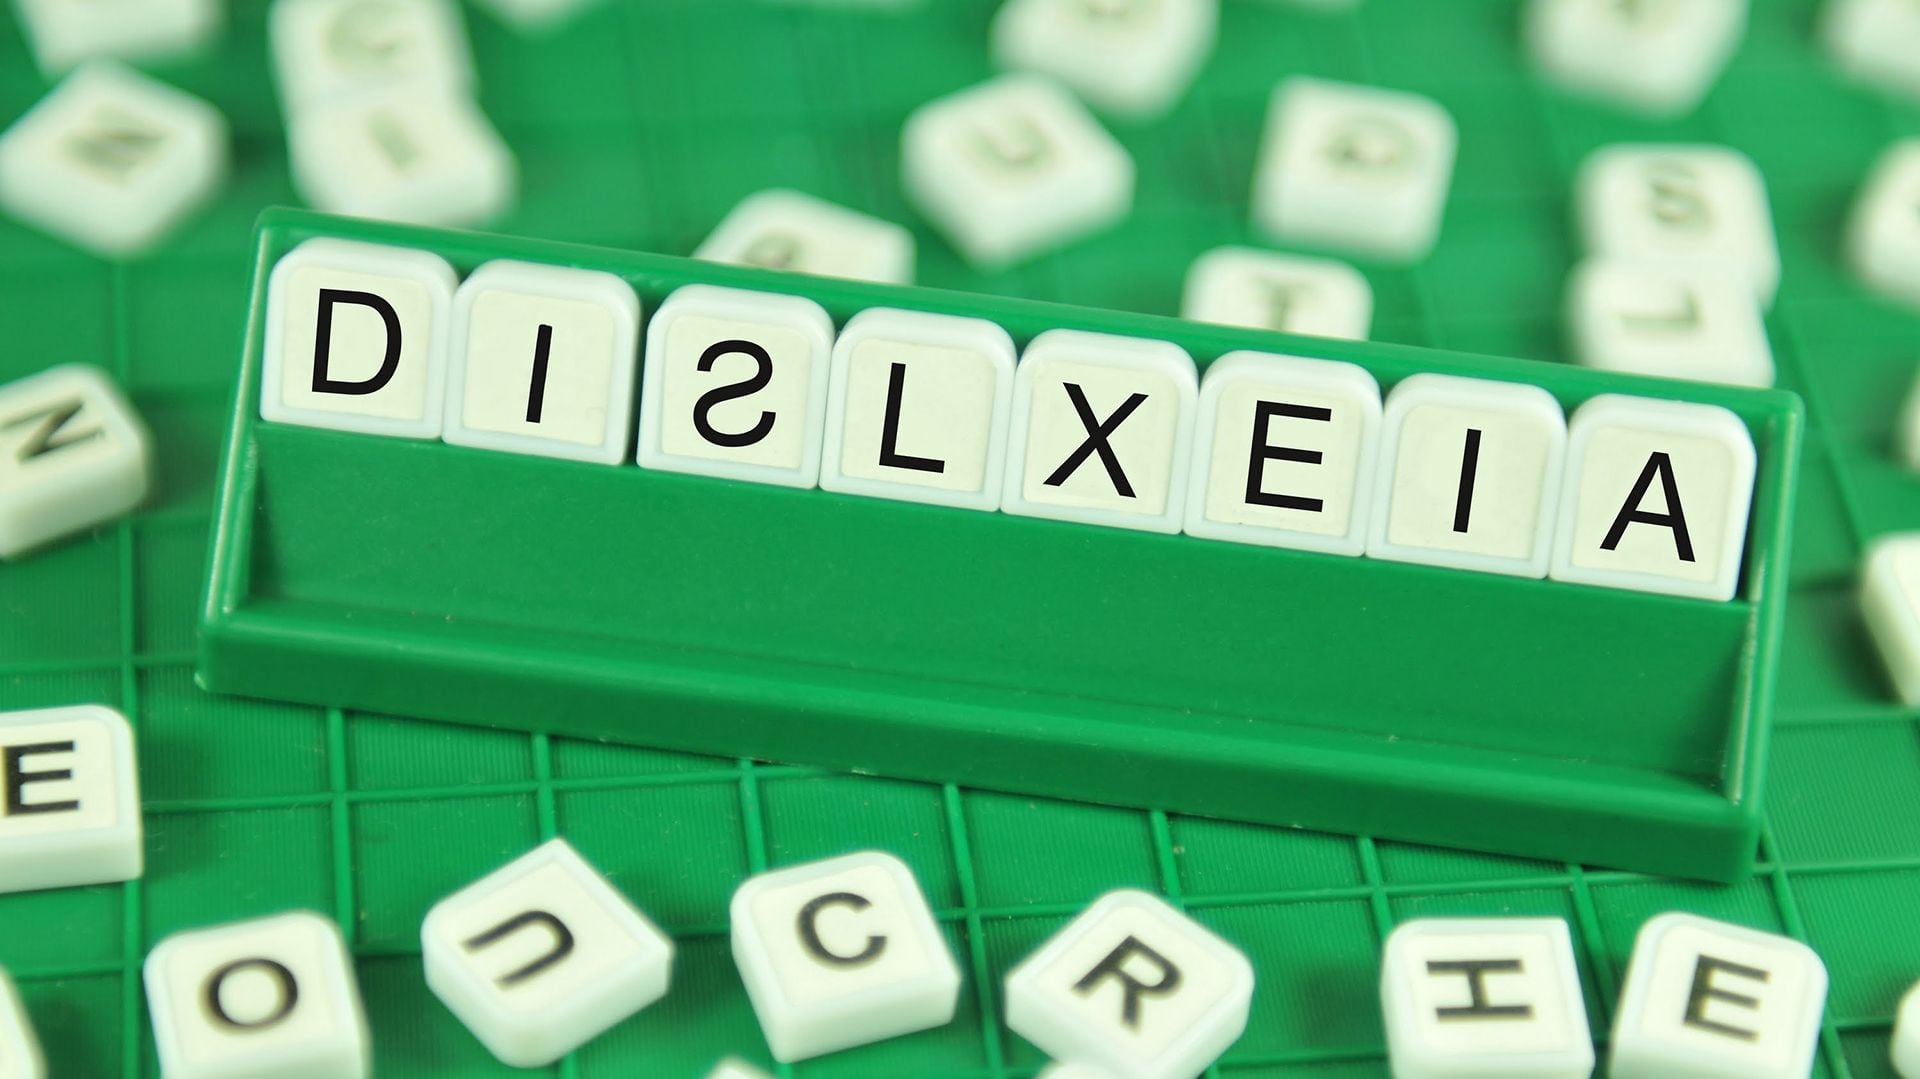 La dislexia es un trastorno del aprendizaje, afecta la capacidad de relacionar sonidos del habla con letras y palabras